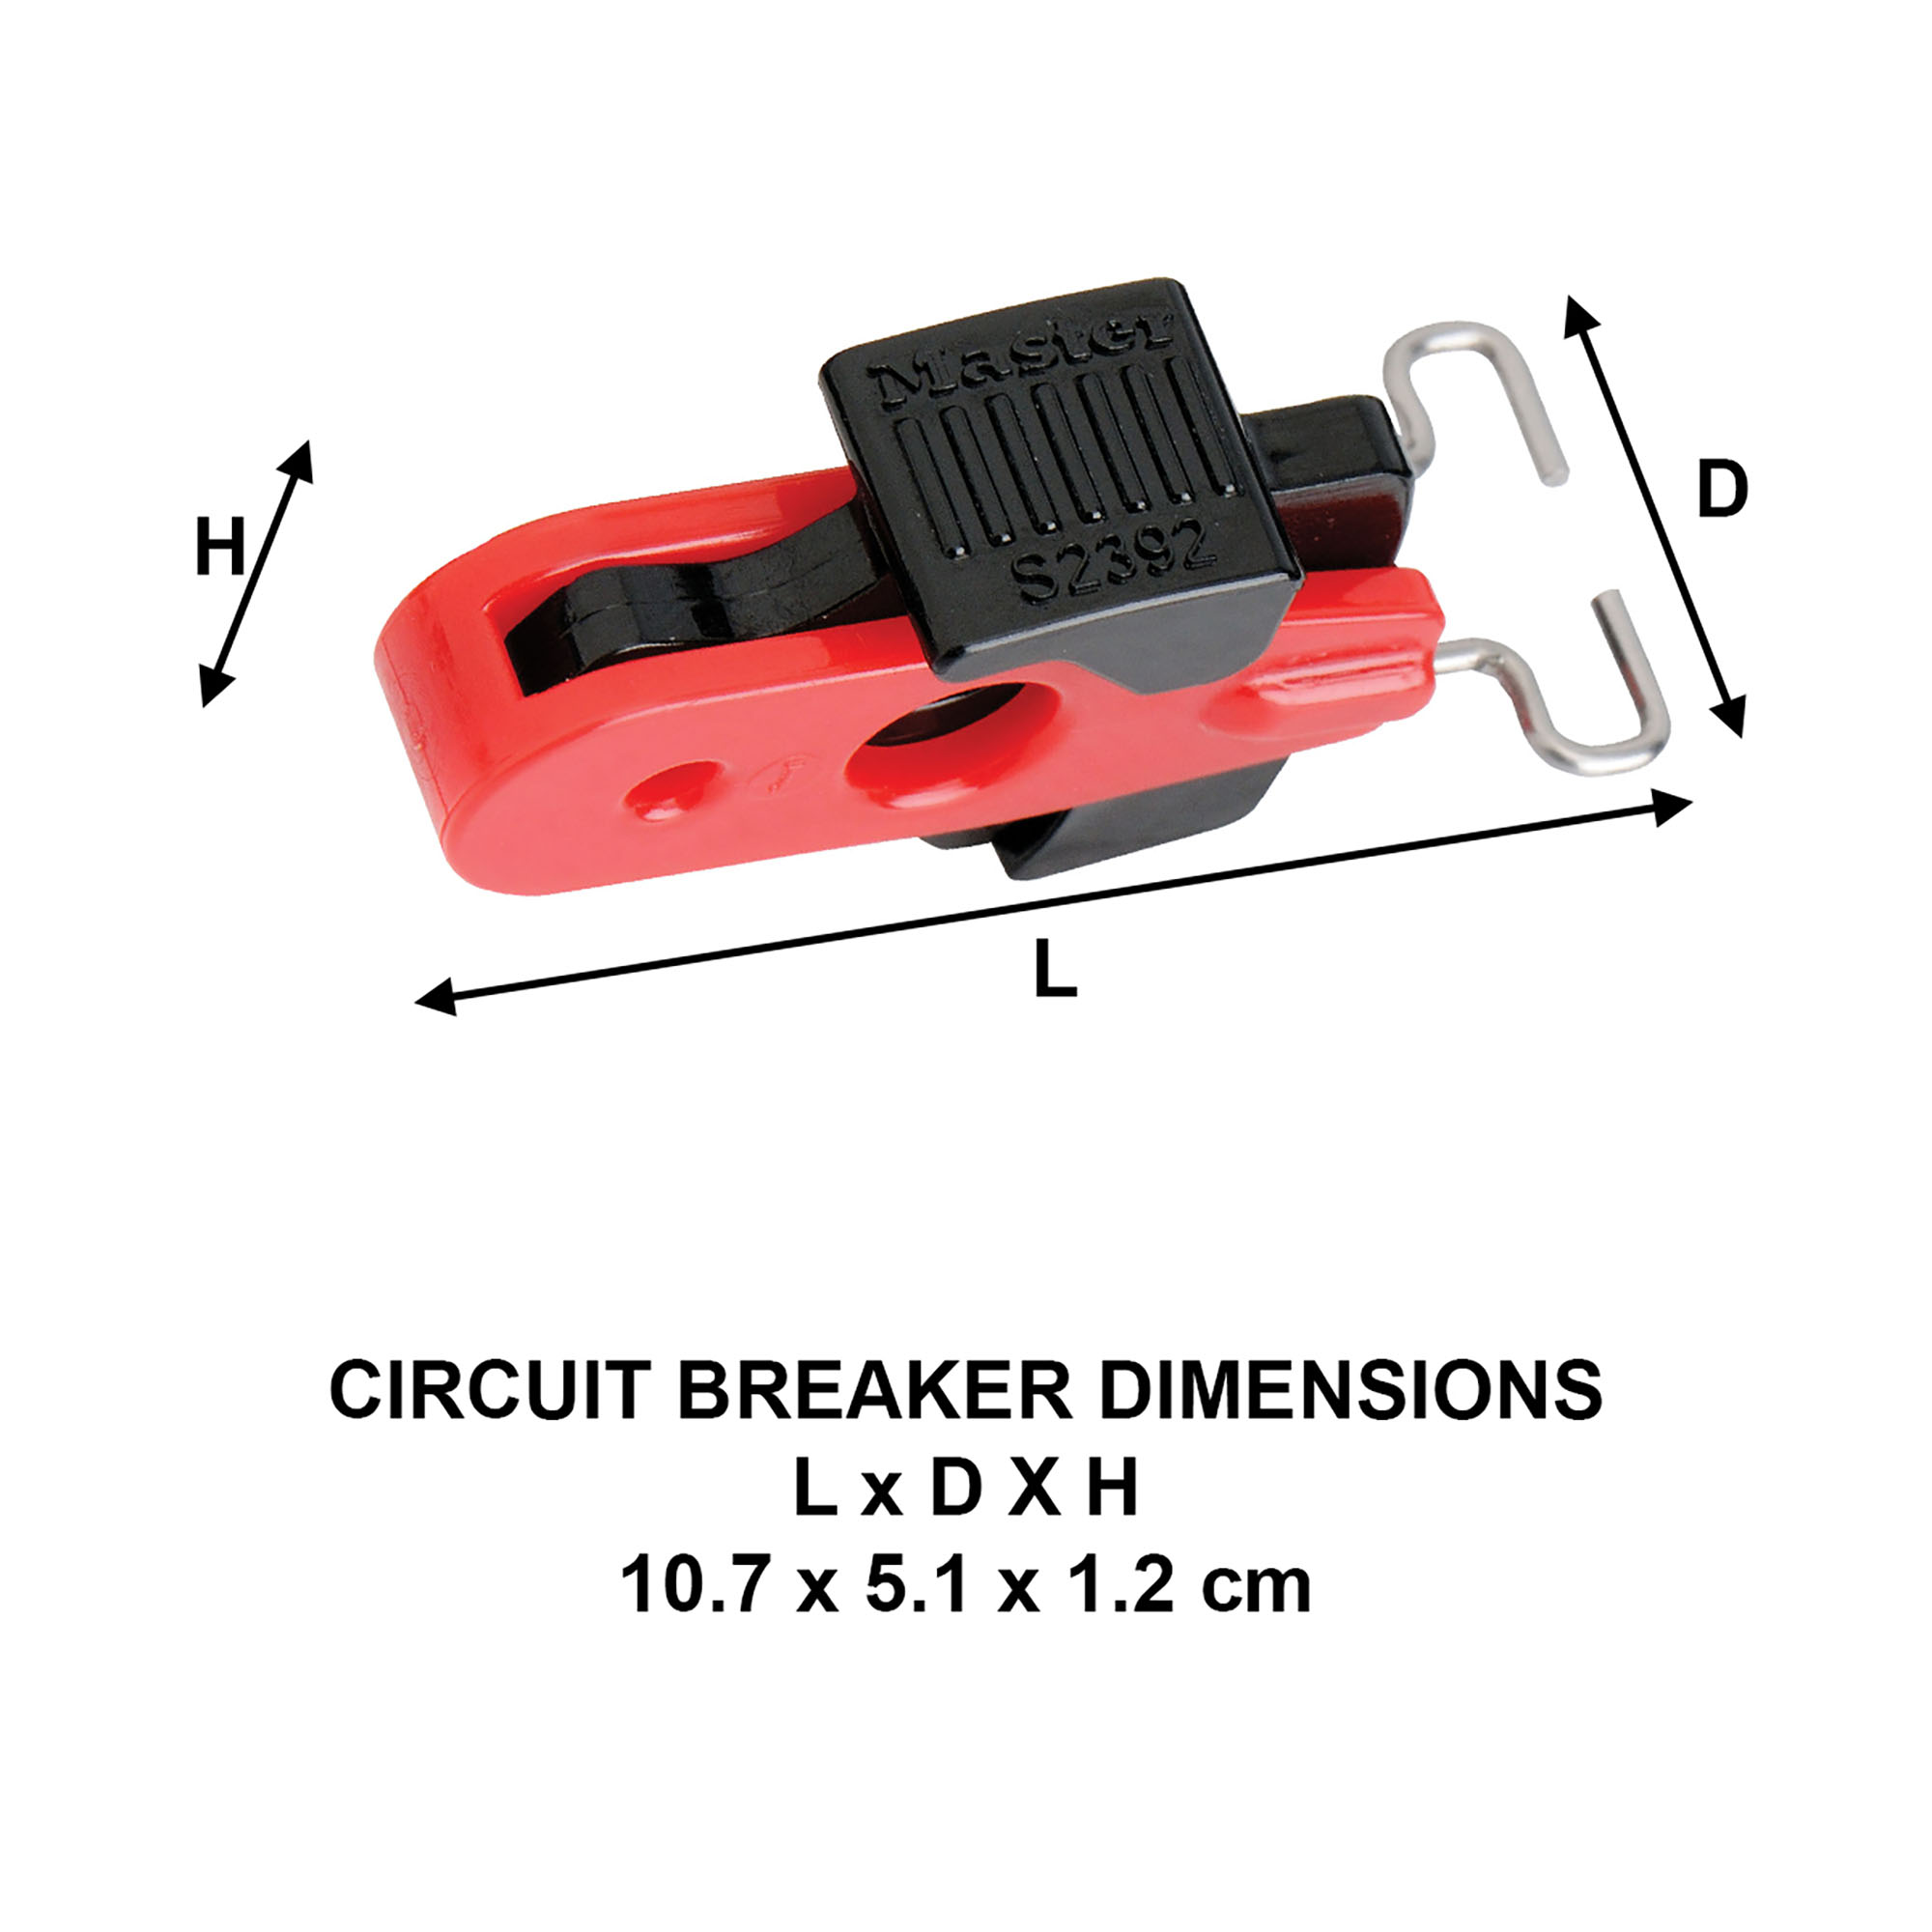 Mini Bloque Disjoncteur Universel pour Consignation Electrique et Interrupteur- Master Lock- Preventimark